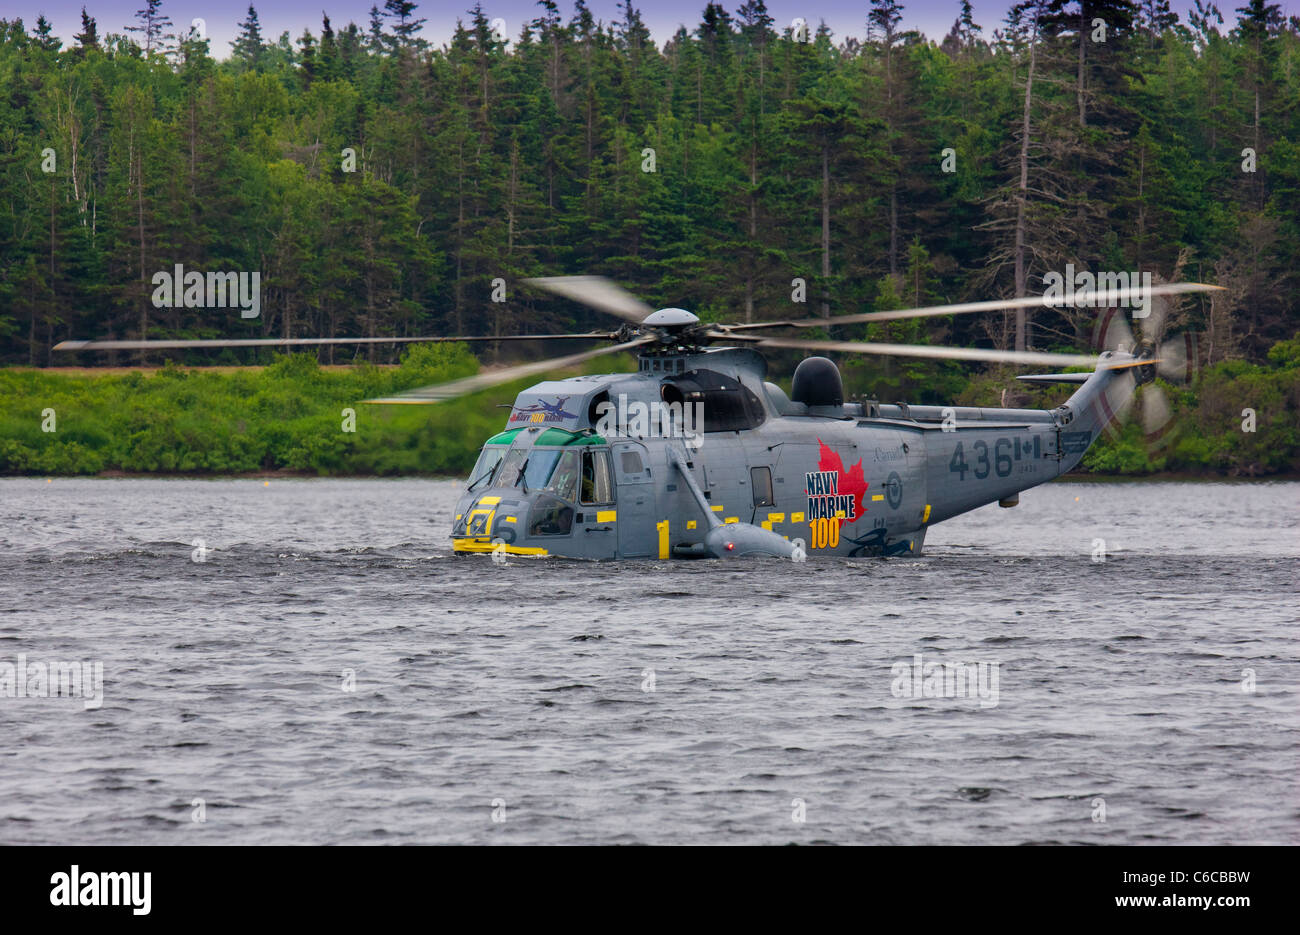 Ein speziell angepasste Sea King Hubschrauber der Kanadier Marines gibt eine Wasser-Vogelbeobachtung-Demonstration Landung auf Wasser Stockfoto